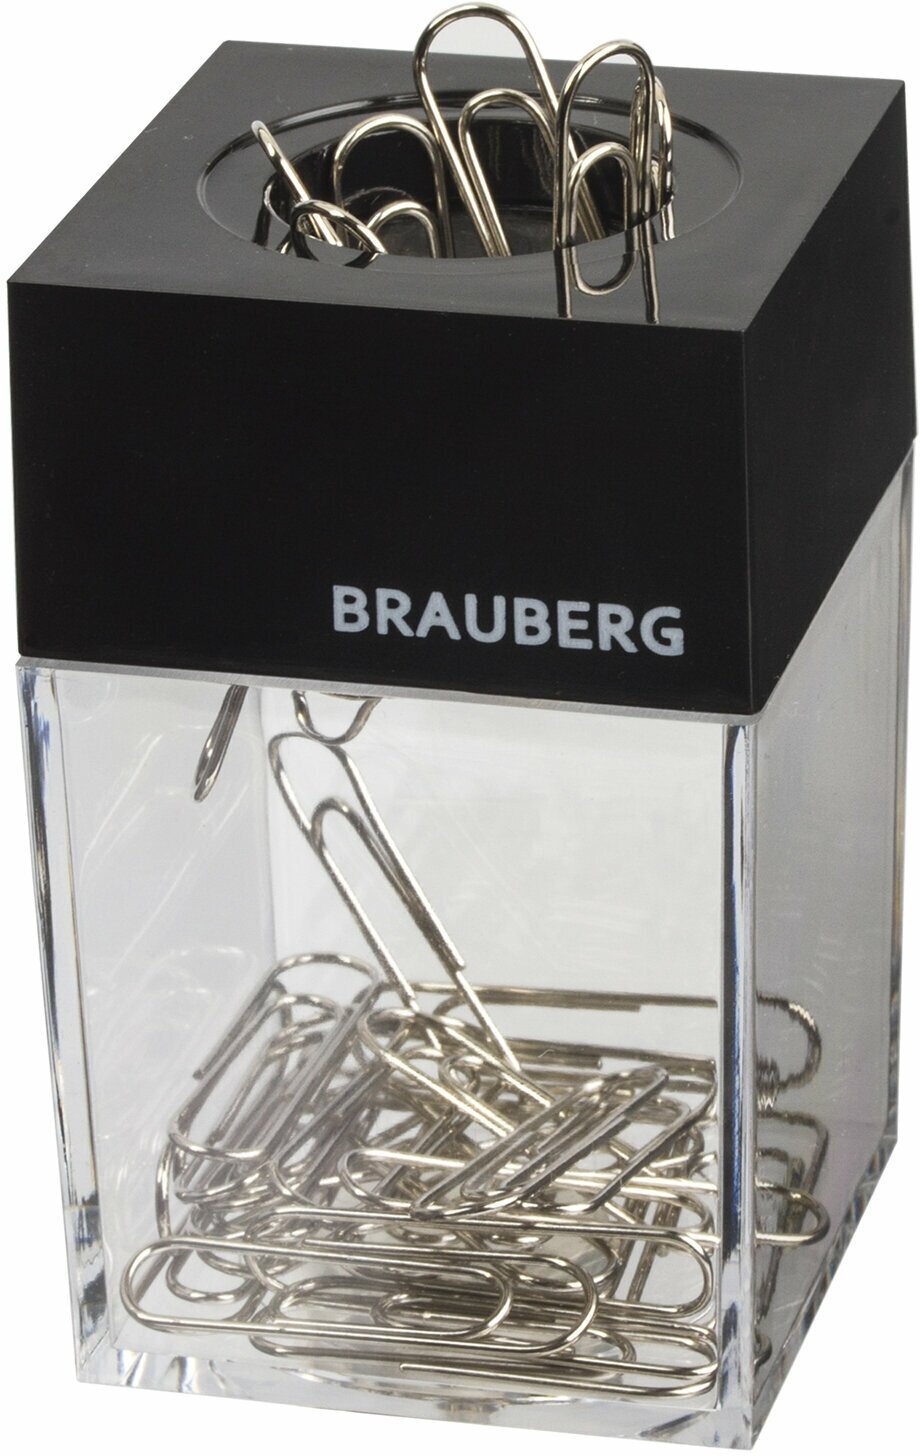 Скрепочница магнитная BRAUBERG с 30 скрепками, прозрачный корпус, 225189